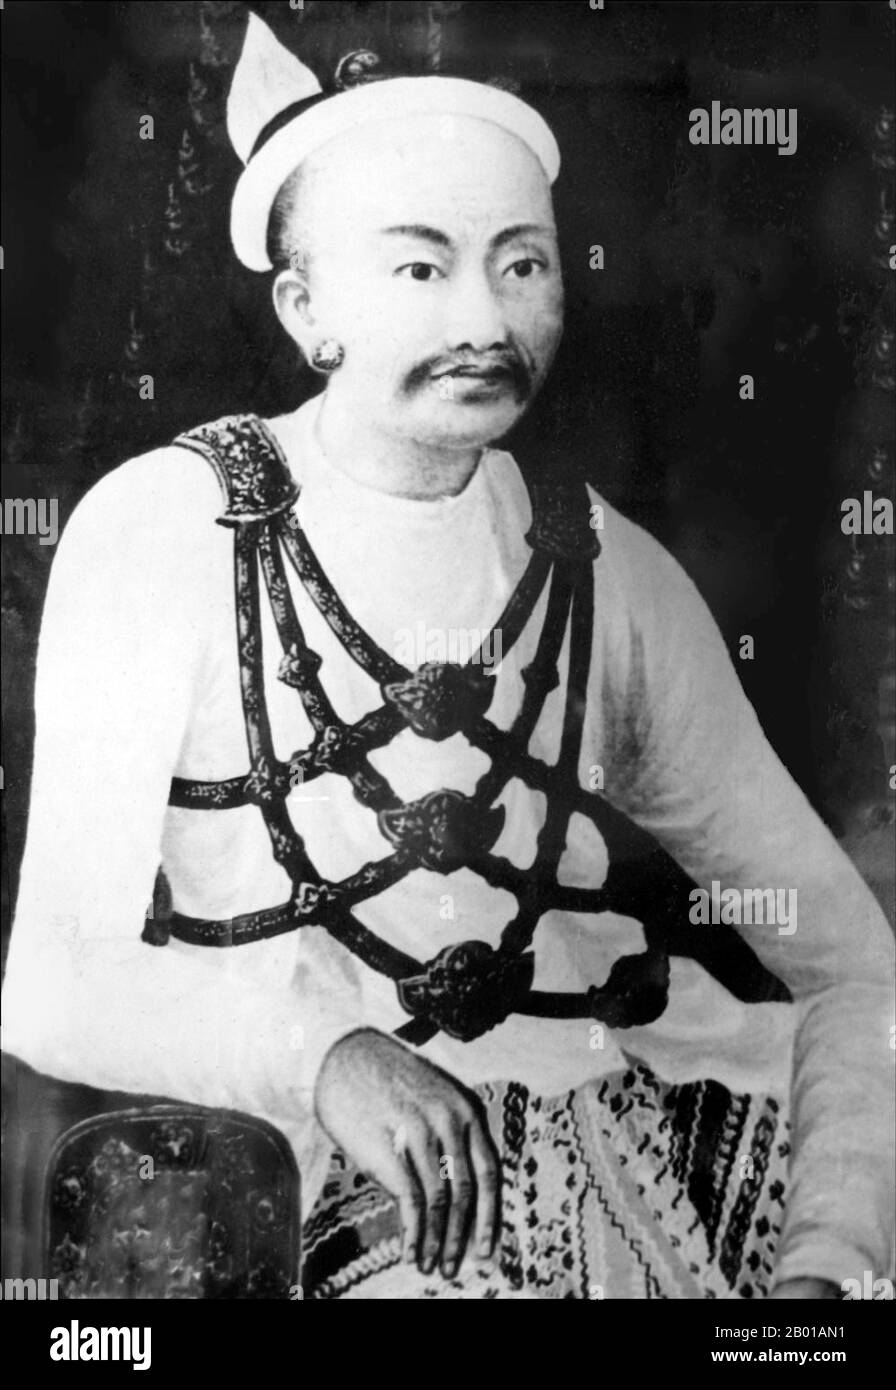 Burma/Myanmar: König Mindon Min (8. Juli 1808 - 1. Oktober 1878), 10. und vorletzter Herrscher der Konbaung-Dynastie (1752-1885), Porträt im Mandalay-Palast, 19.. Jahrhundert. Mindon Min war von 1853 bis 1878 der vorletzte König von Burma (Myanmar). Er war einer der beliebtesten und verehrten Könige von Burma. Unter seinem Halbbruder König Pagan endete der zweite anglo-birmanische Krieg 1852 mit der Annexion von Niederburma durch das Britische Imperium; Mindon und sein jüngerer Bruder Kanaung stürzten daraufhin ihren Halbbruder. Er verbrachte den größten Teil seiner Regierungszeit damit, sein Königreich zu verteidigen und zu modernisieren. Stockfoto